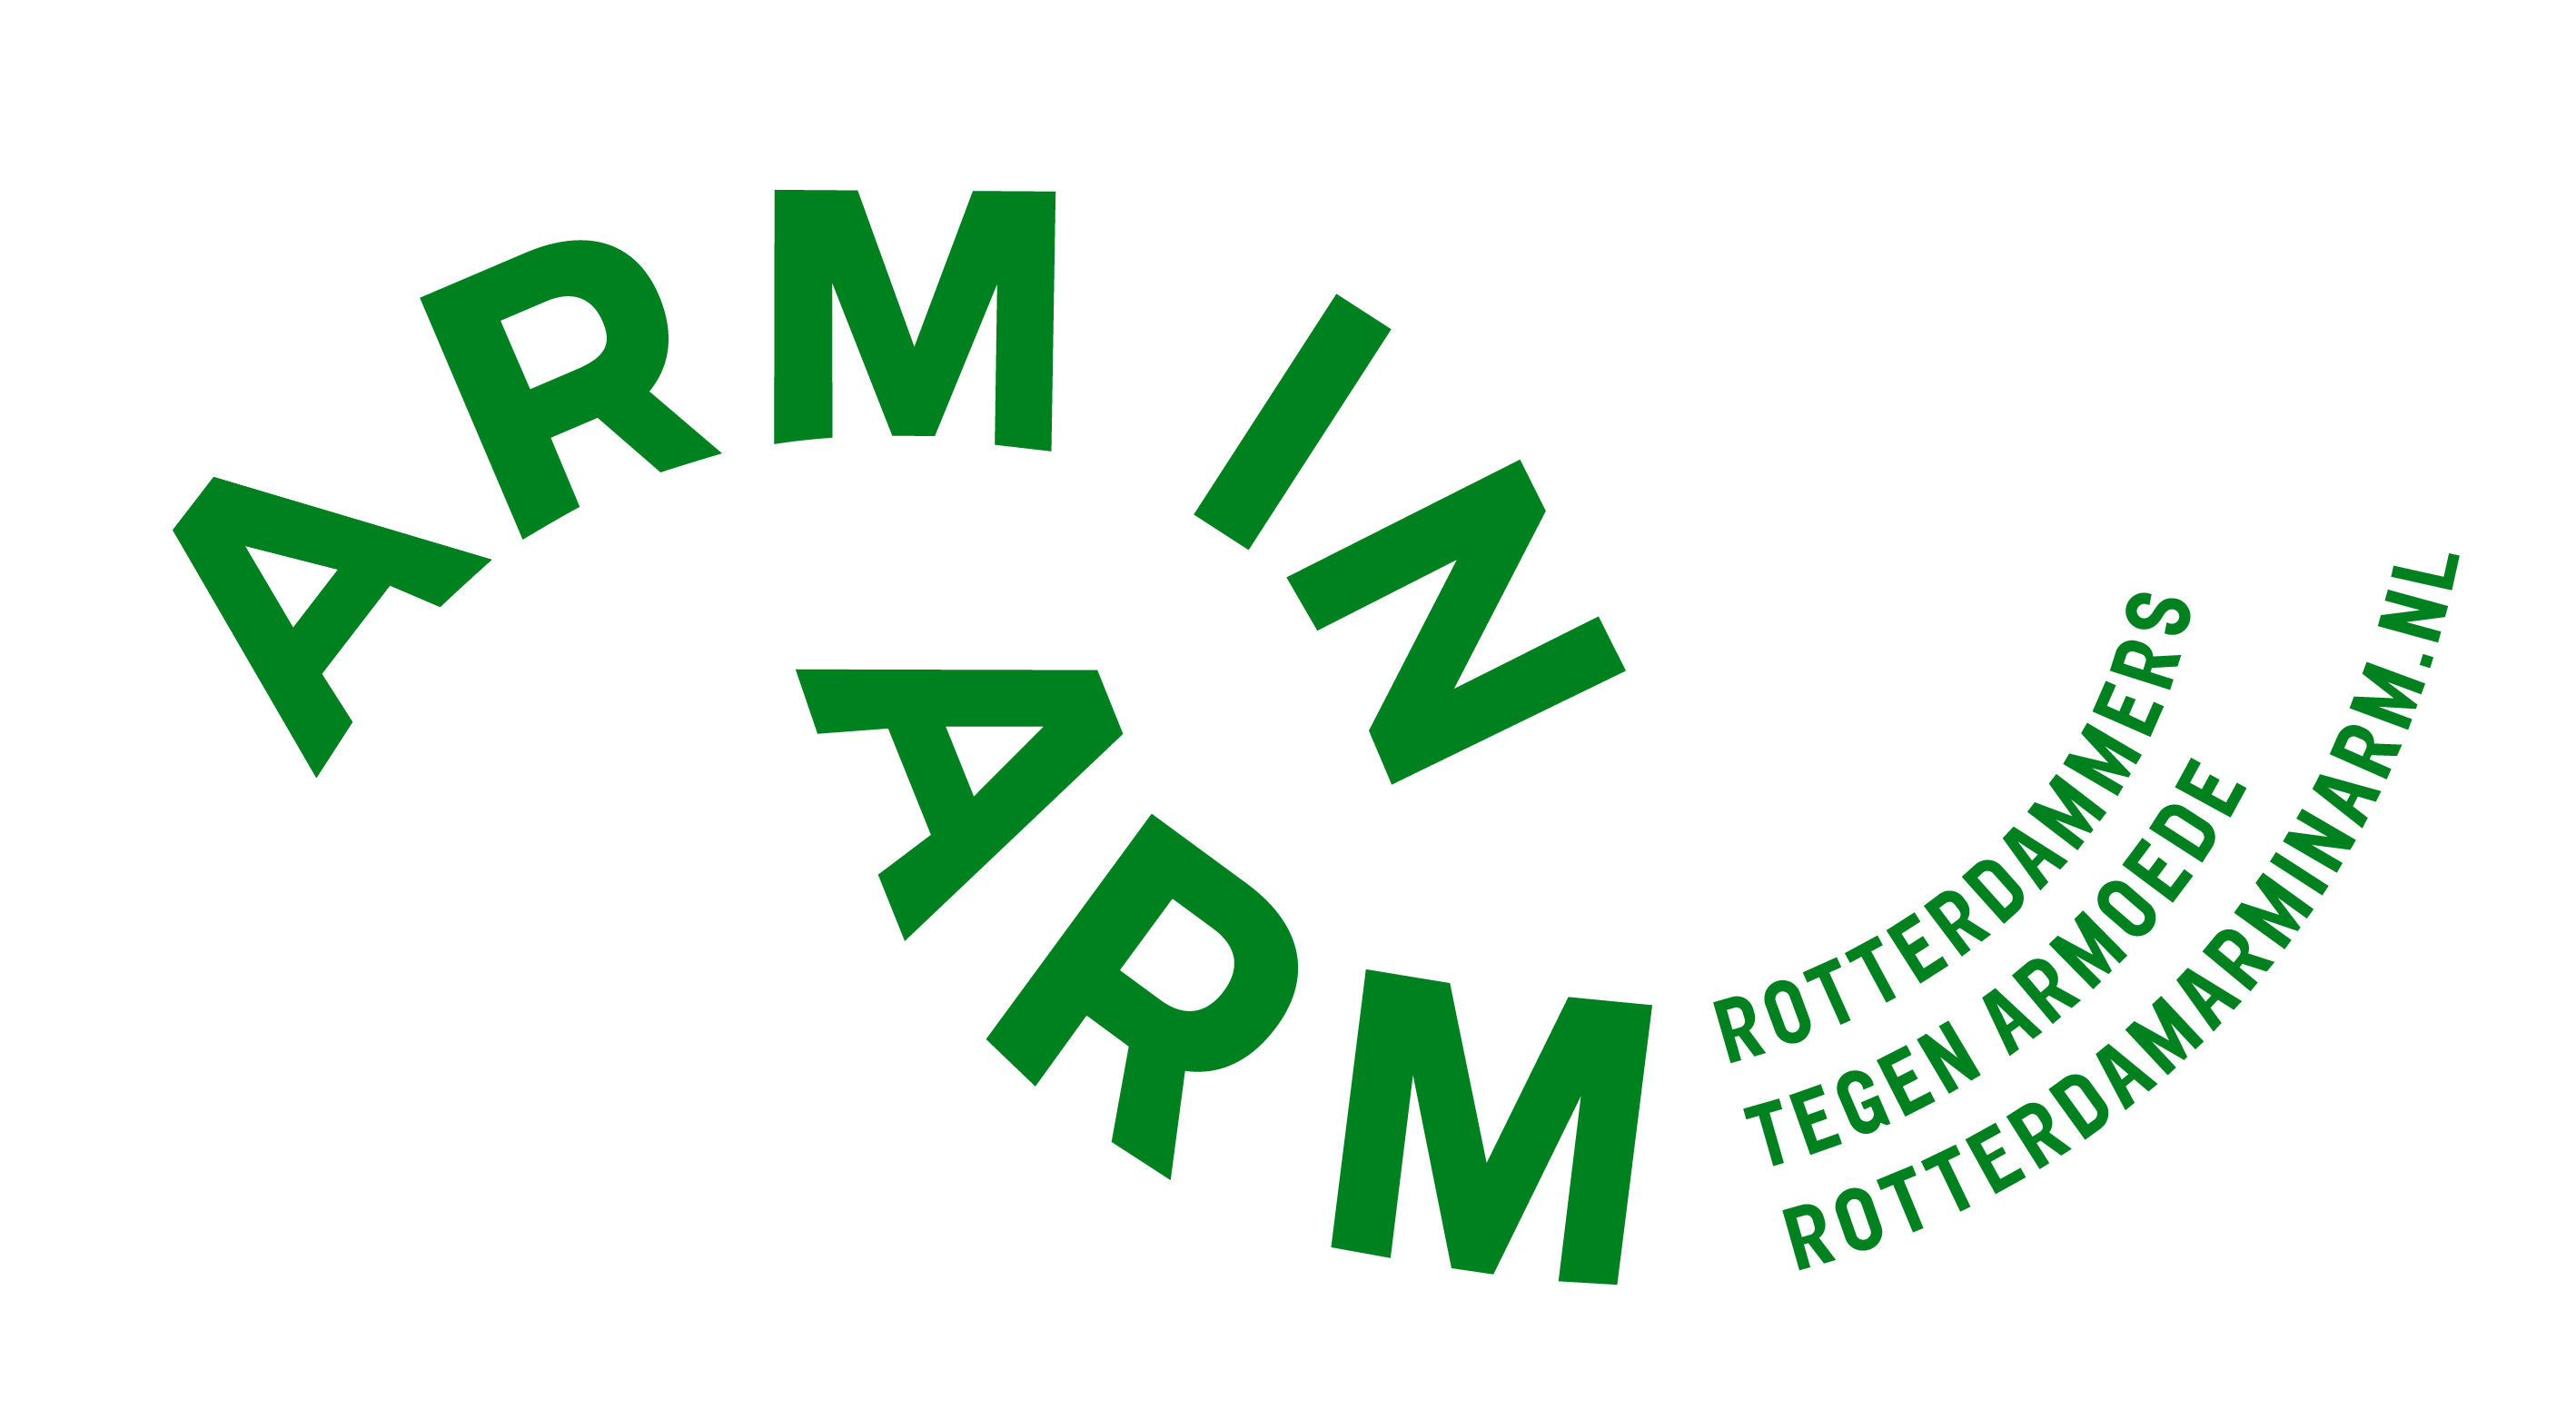 Samenwerking met Rotterdam arm-in-arm